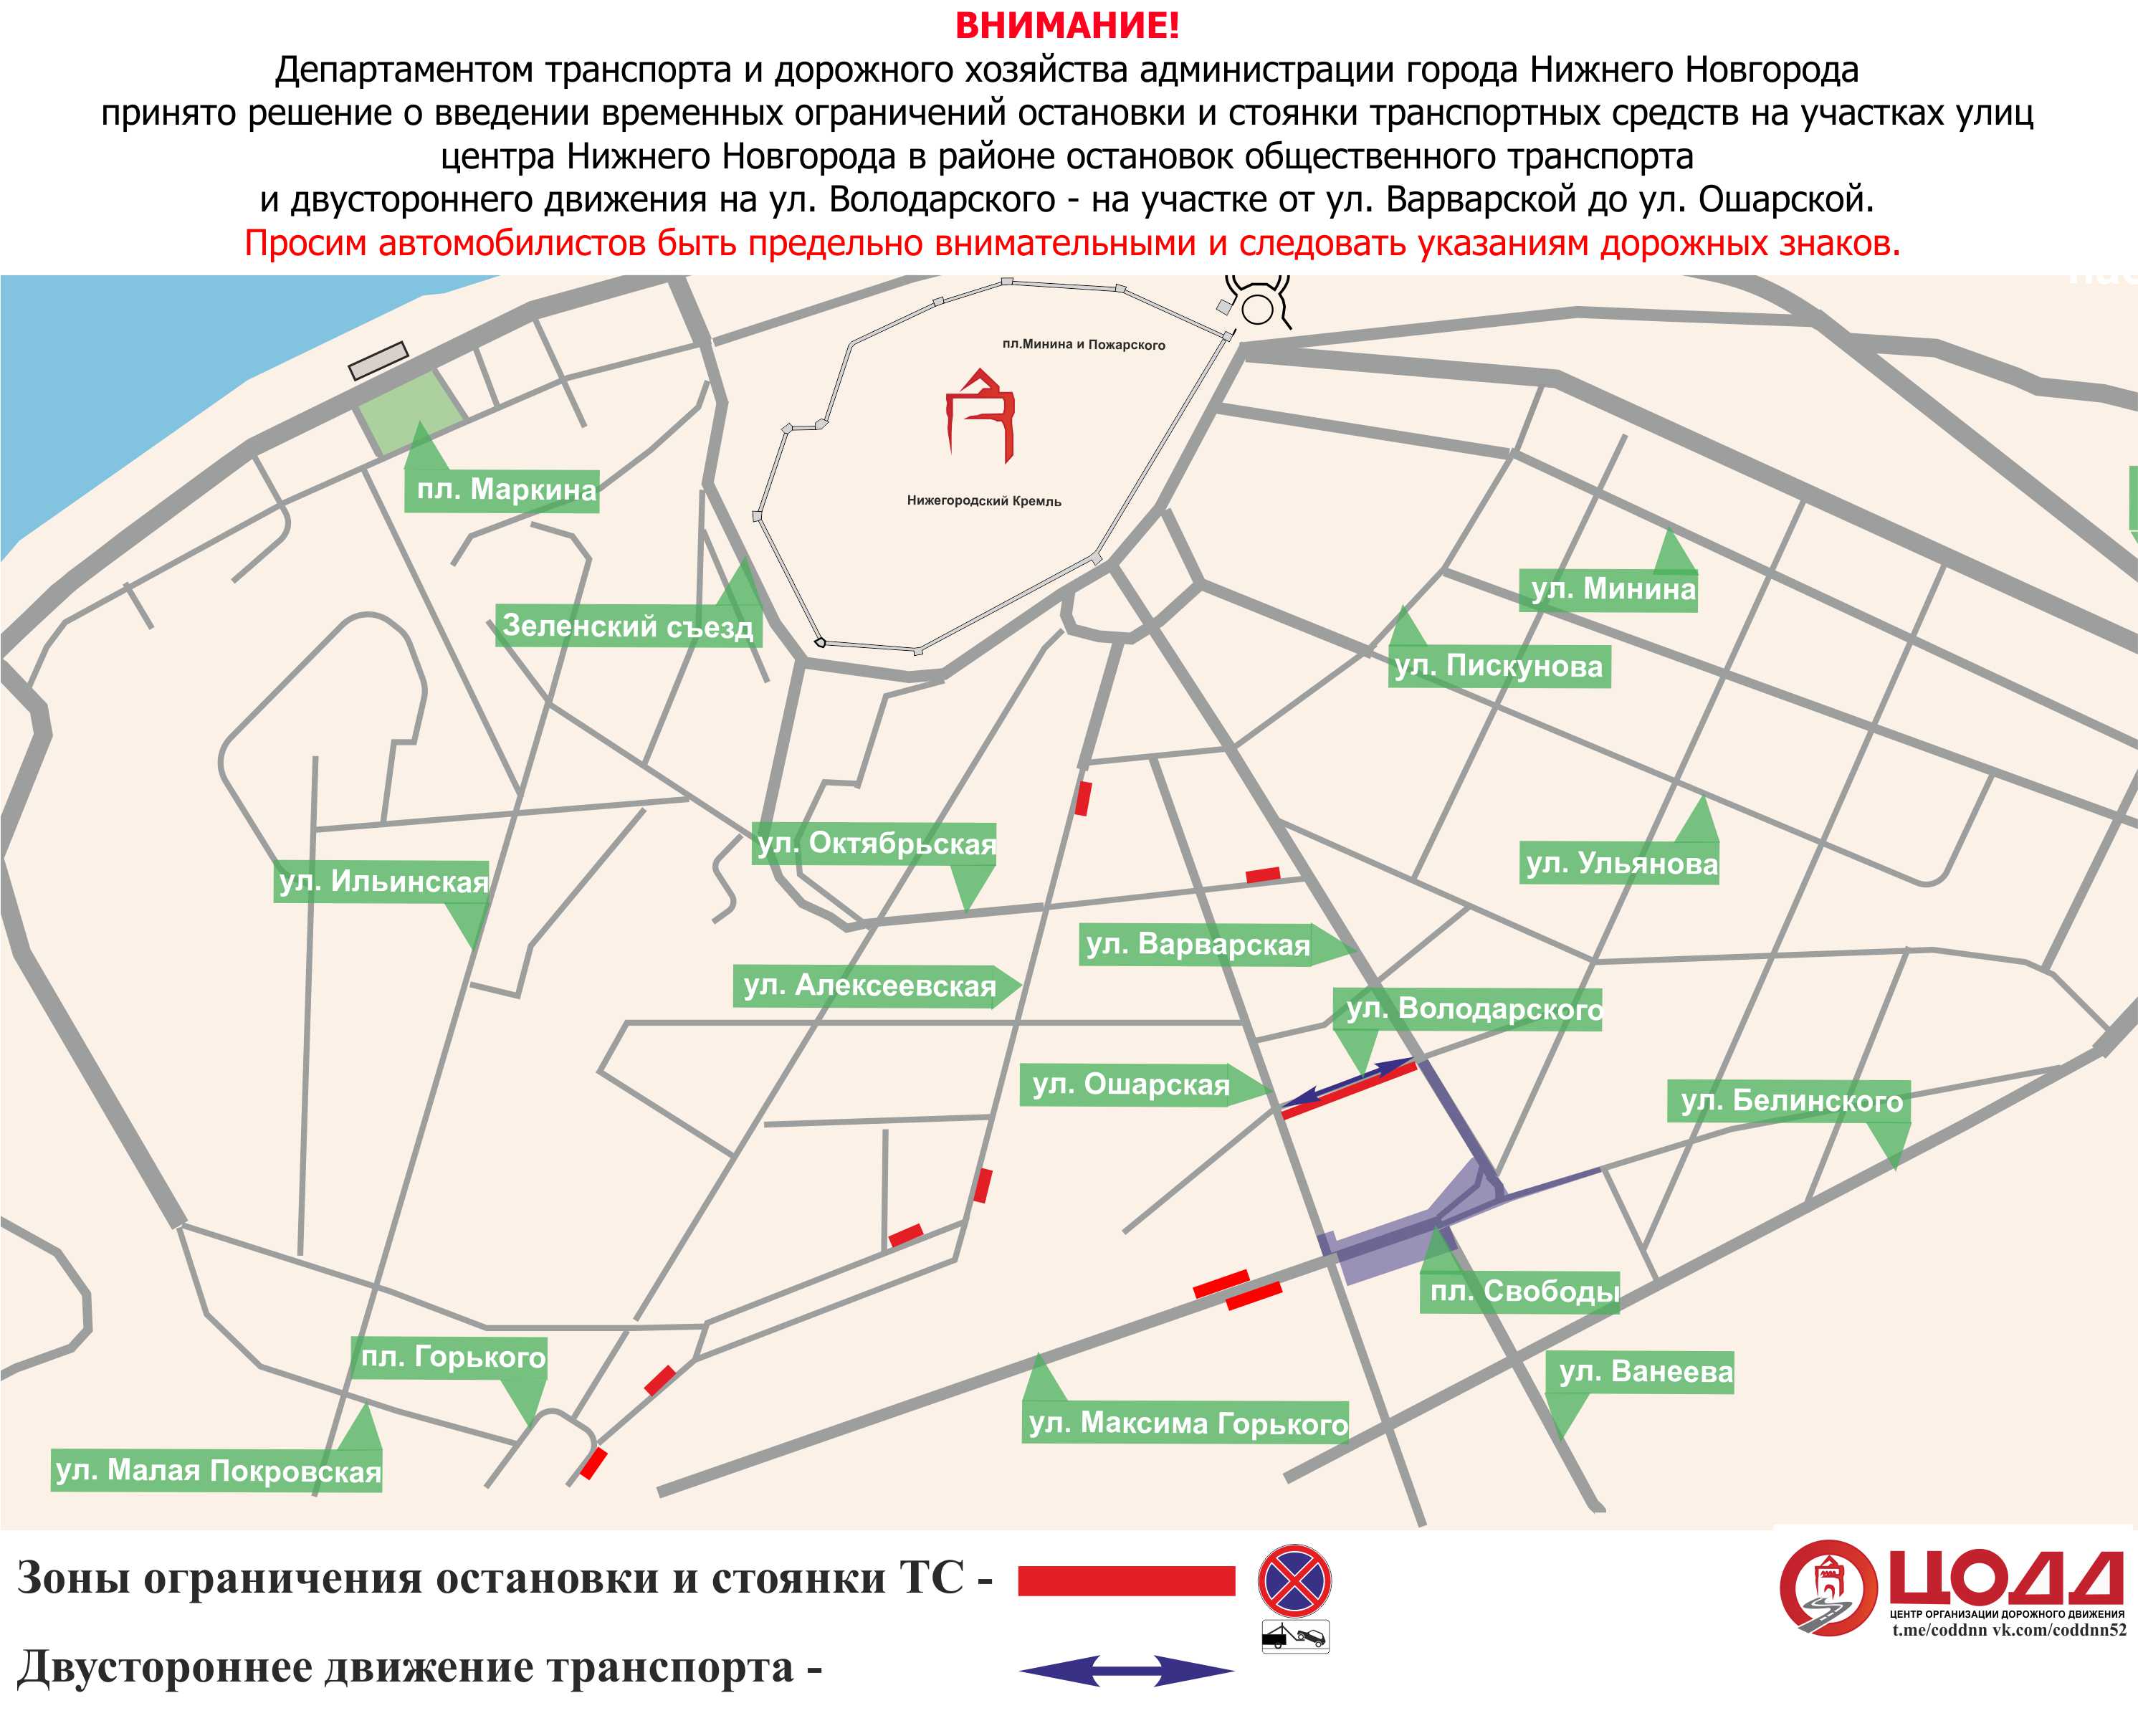 метро карта нижний новгород